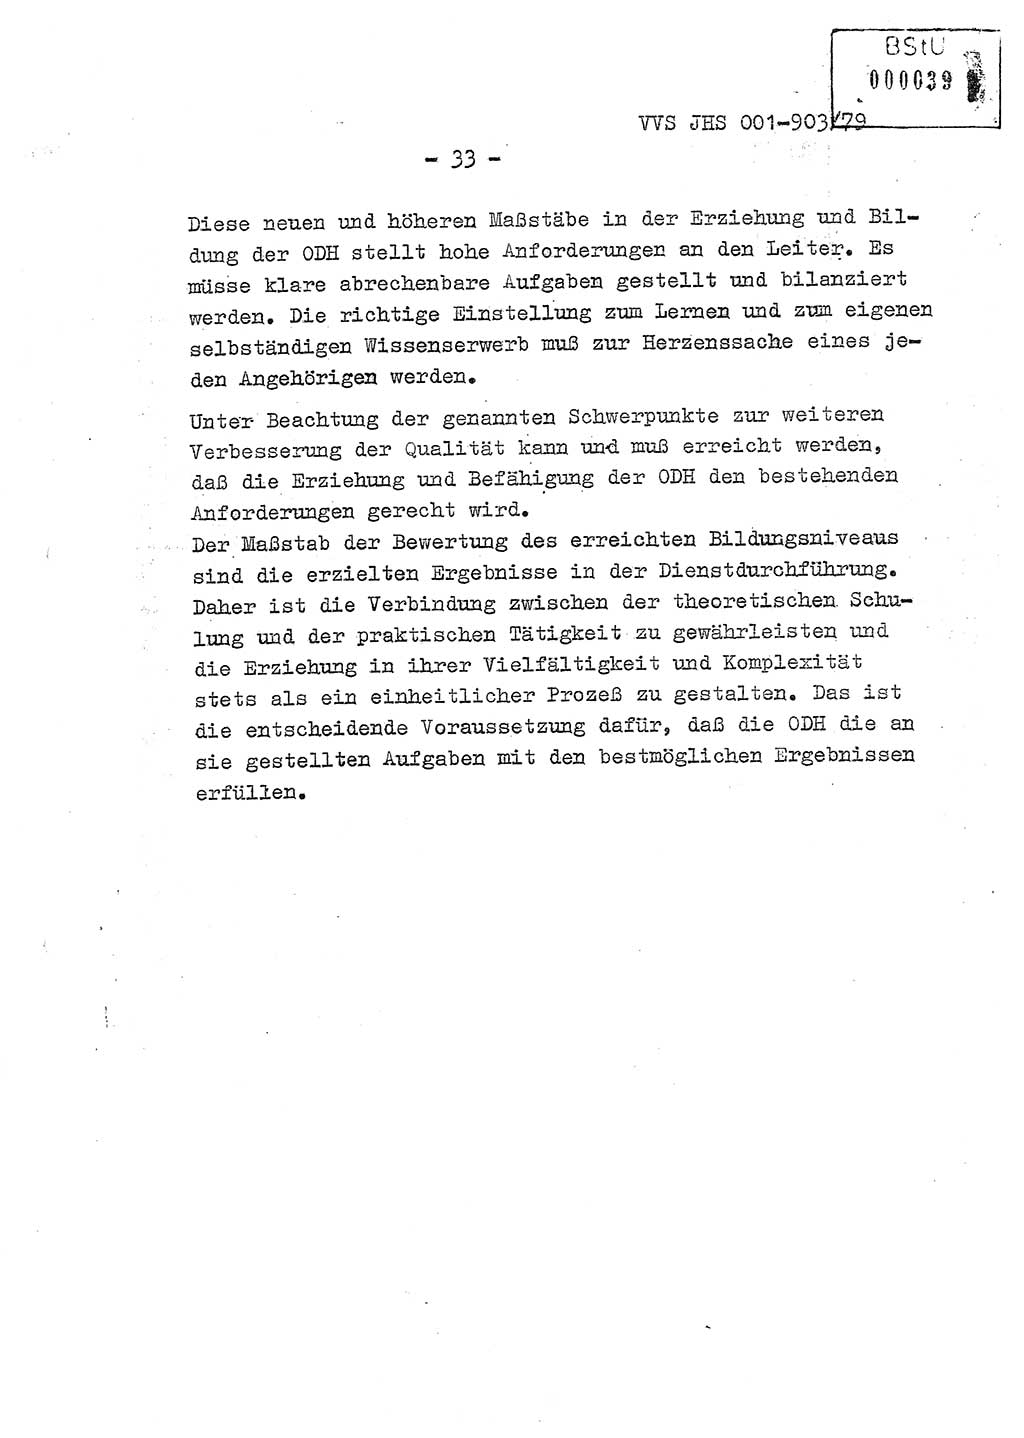 Fachschulabschlußarbeit Oberleutnant Jochen Pfeffer (HA Ⅸ/AGL), Ministerium für Staatssicherheit (MfS) [Deutsche Demokratische Republik (DDR)], Juristische Hochschule (JHS), Vertrauliche Verschlußsache (VVS) 001-903/79, Potsdam 1979, Seite 33 (FS-Abschl.-Arb. MfS DDR JHS VVS 001-903/79 1979, S. 33)